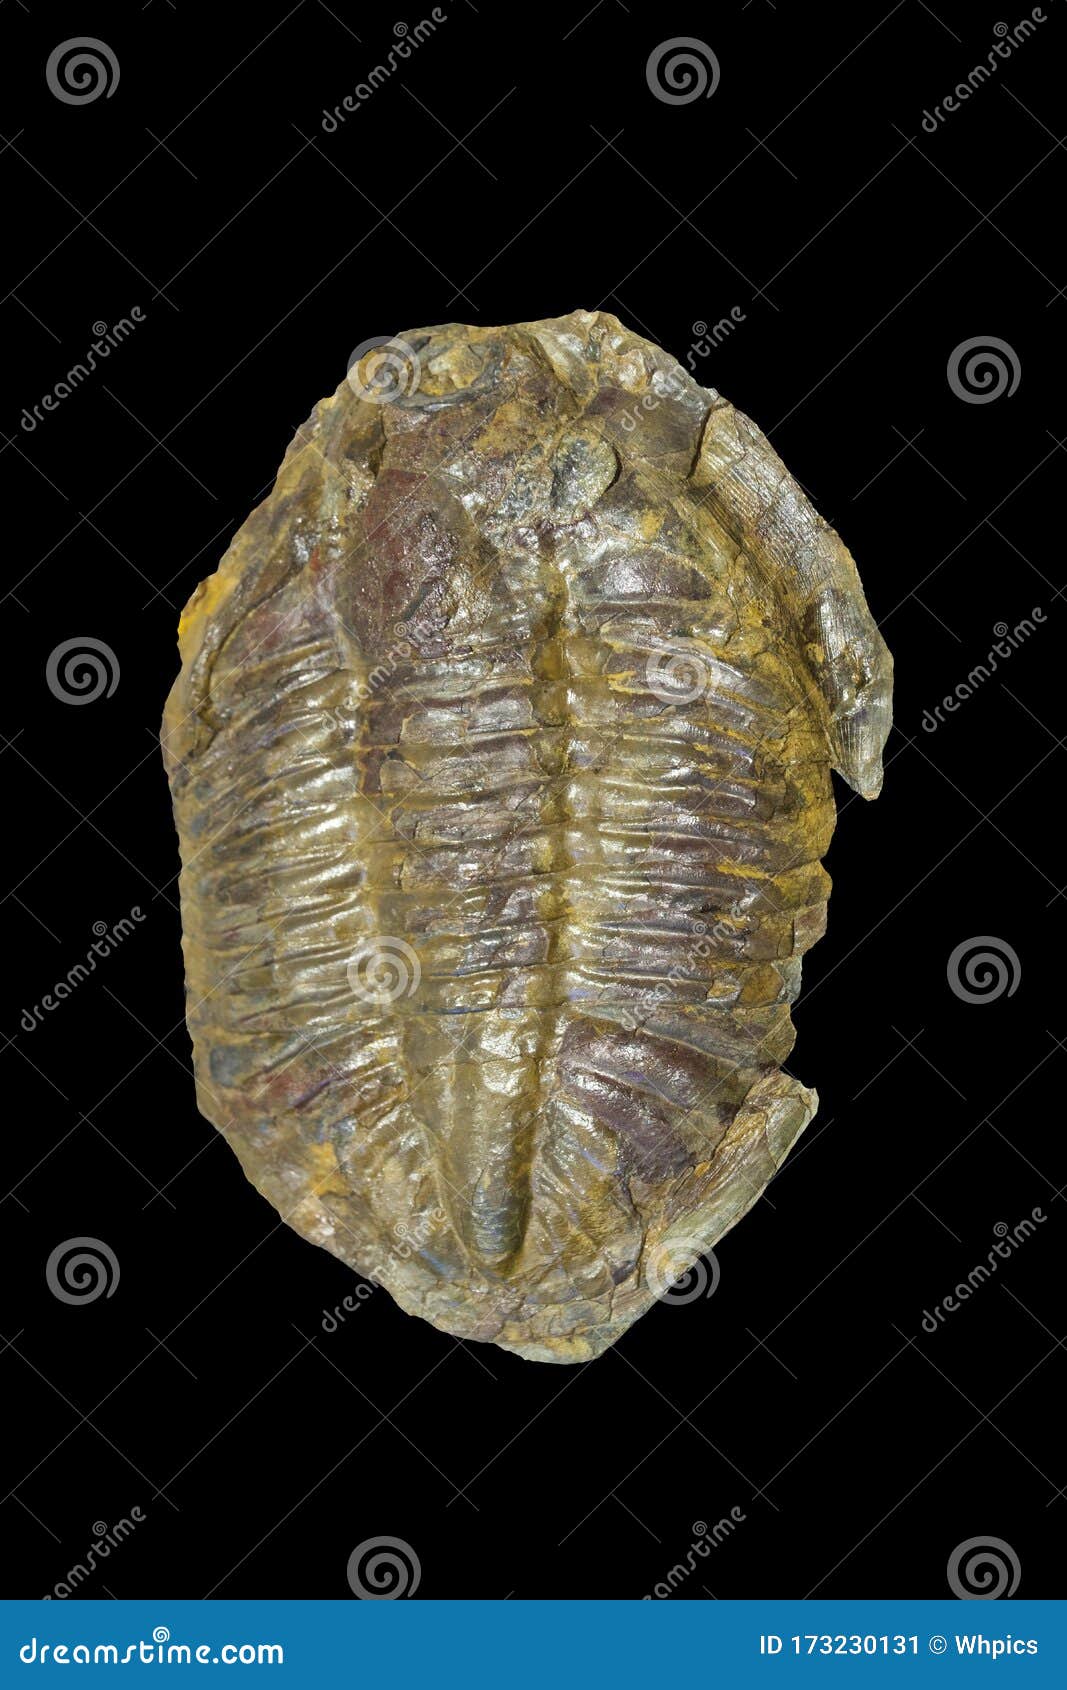 arthropod fossil. ordovician era